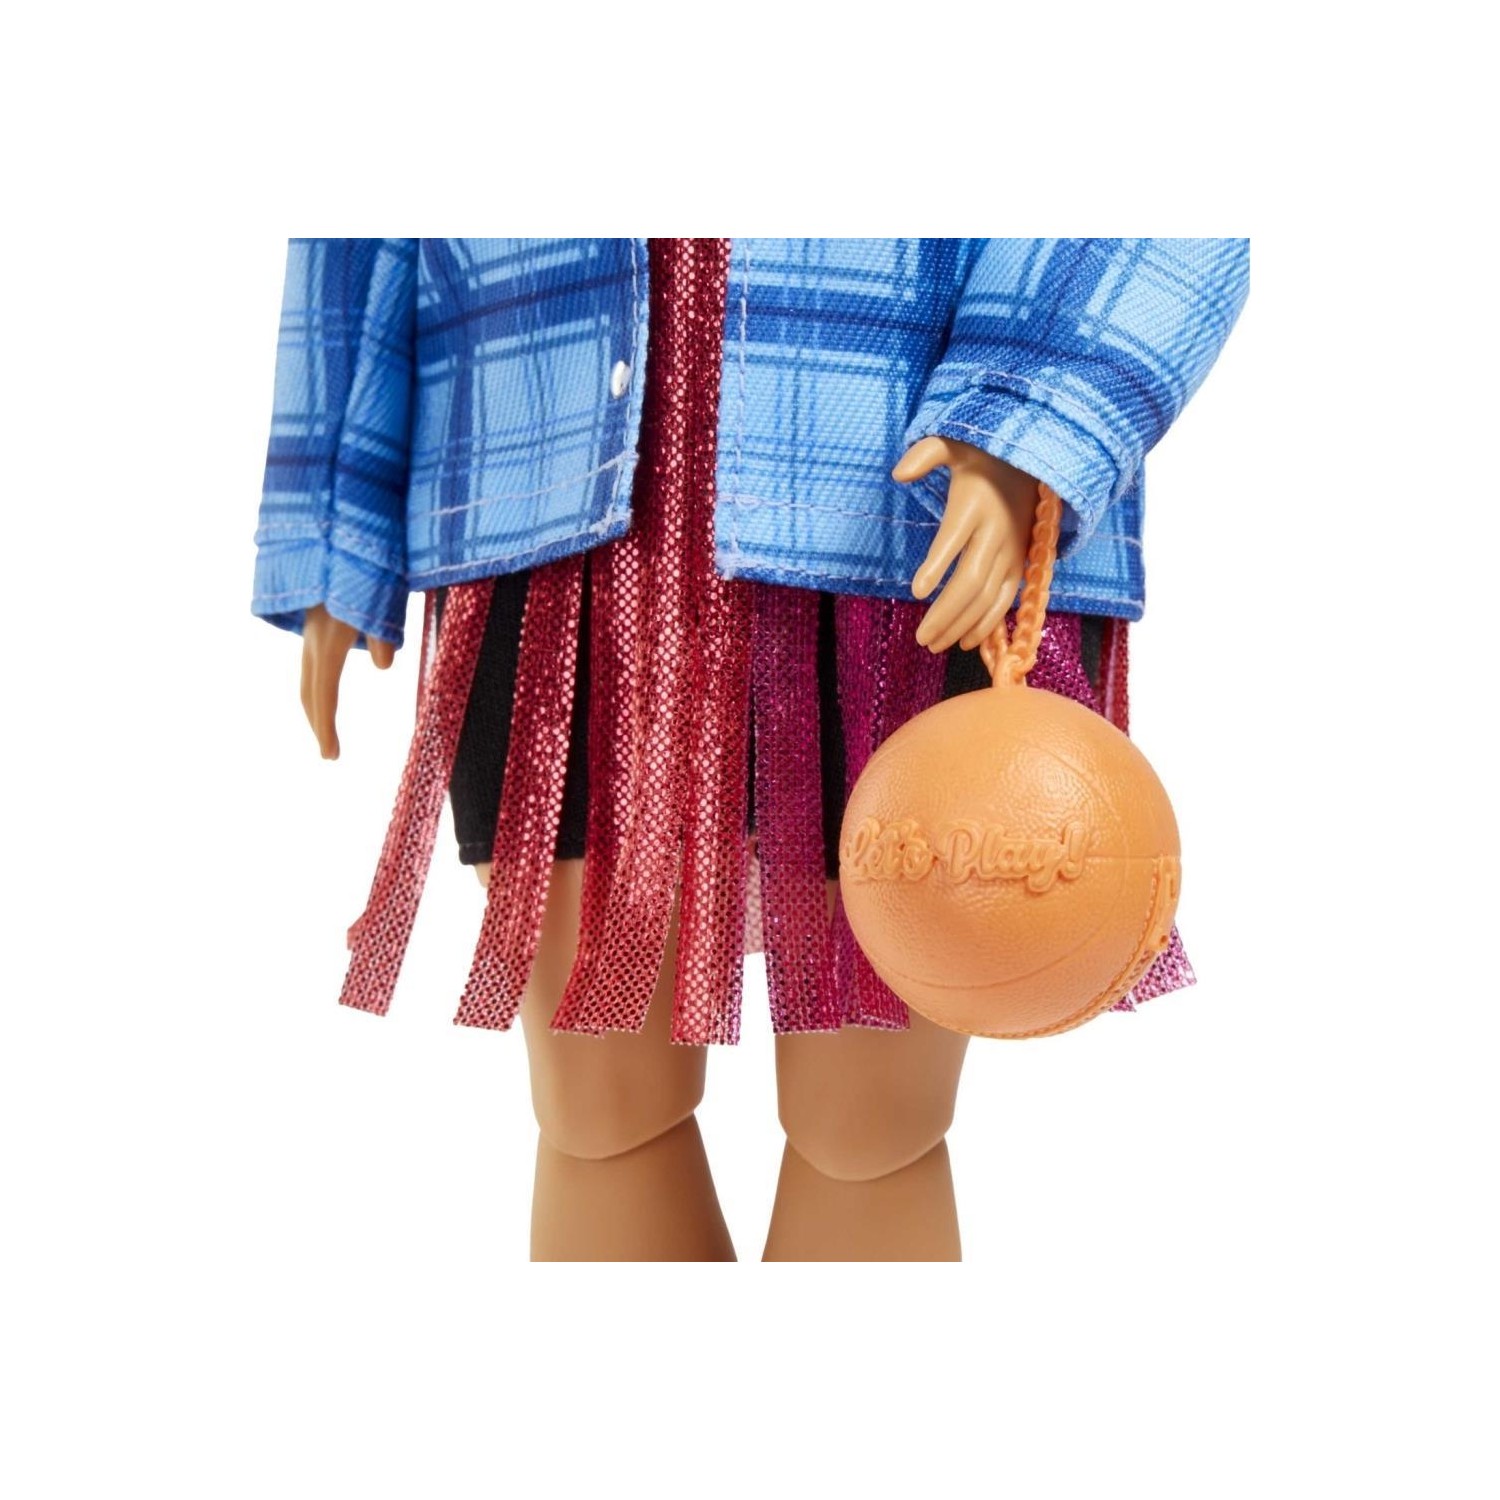 Кукла Barbie Extra Baby in Plaid Jacket, Corgi Dog HDJ46 кукла mattel barbie экстра кукла в платье баскетбольный стиль hdj46